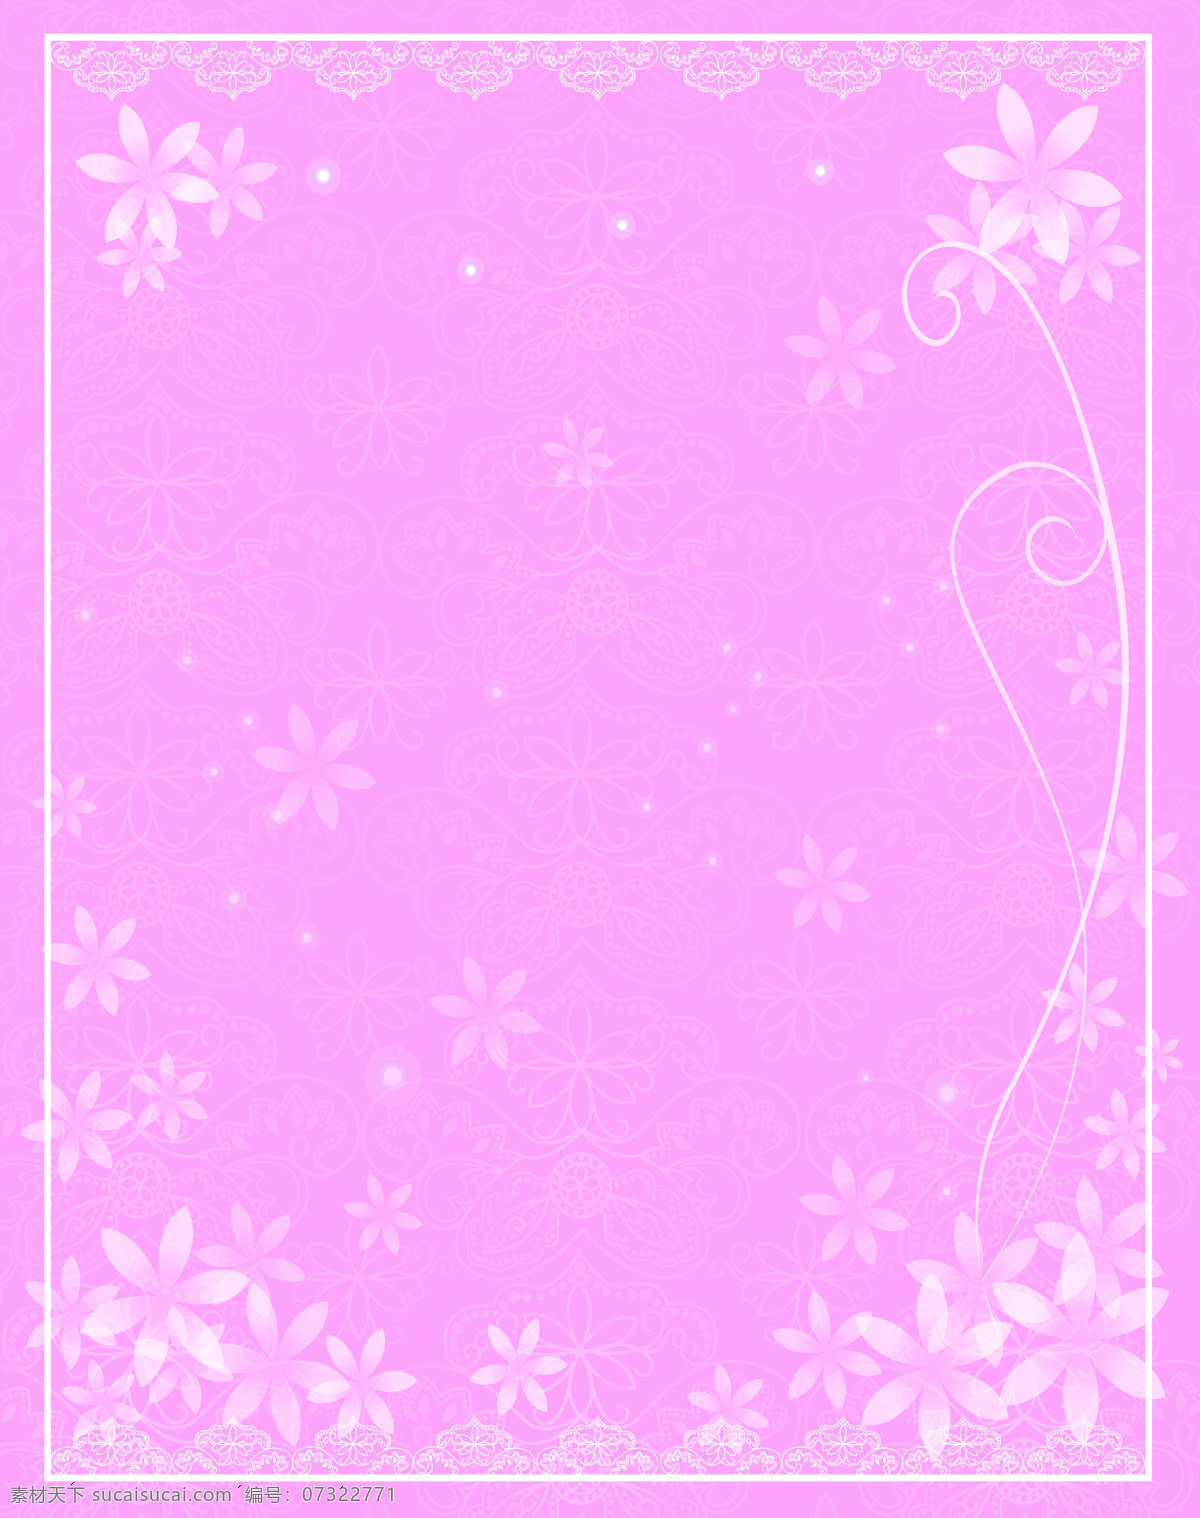 唯美 梦幻 移门 图 y180 白色花朵 粉色背景 花朵移门 线条 星光 移门图库 移门大全18 索亚卡 两 扇 线条花朵底纹 加点底纹 花边栏框 装饰素材